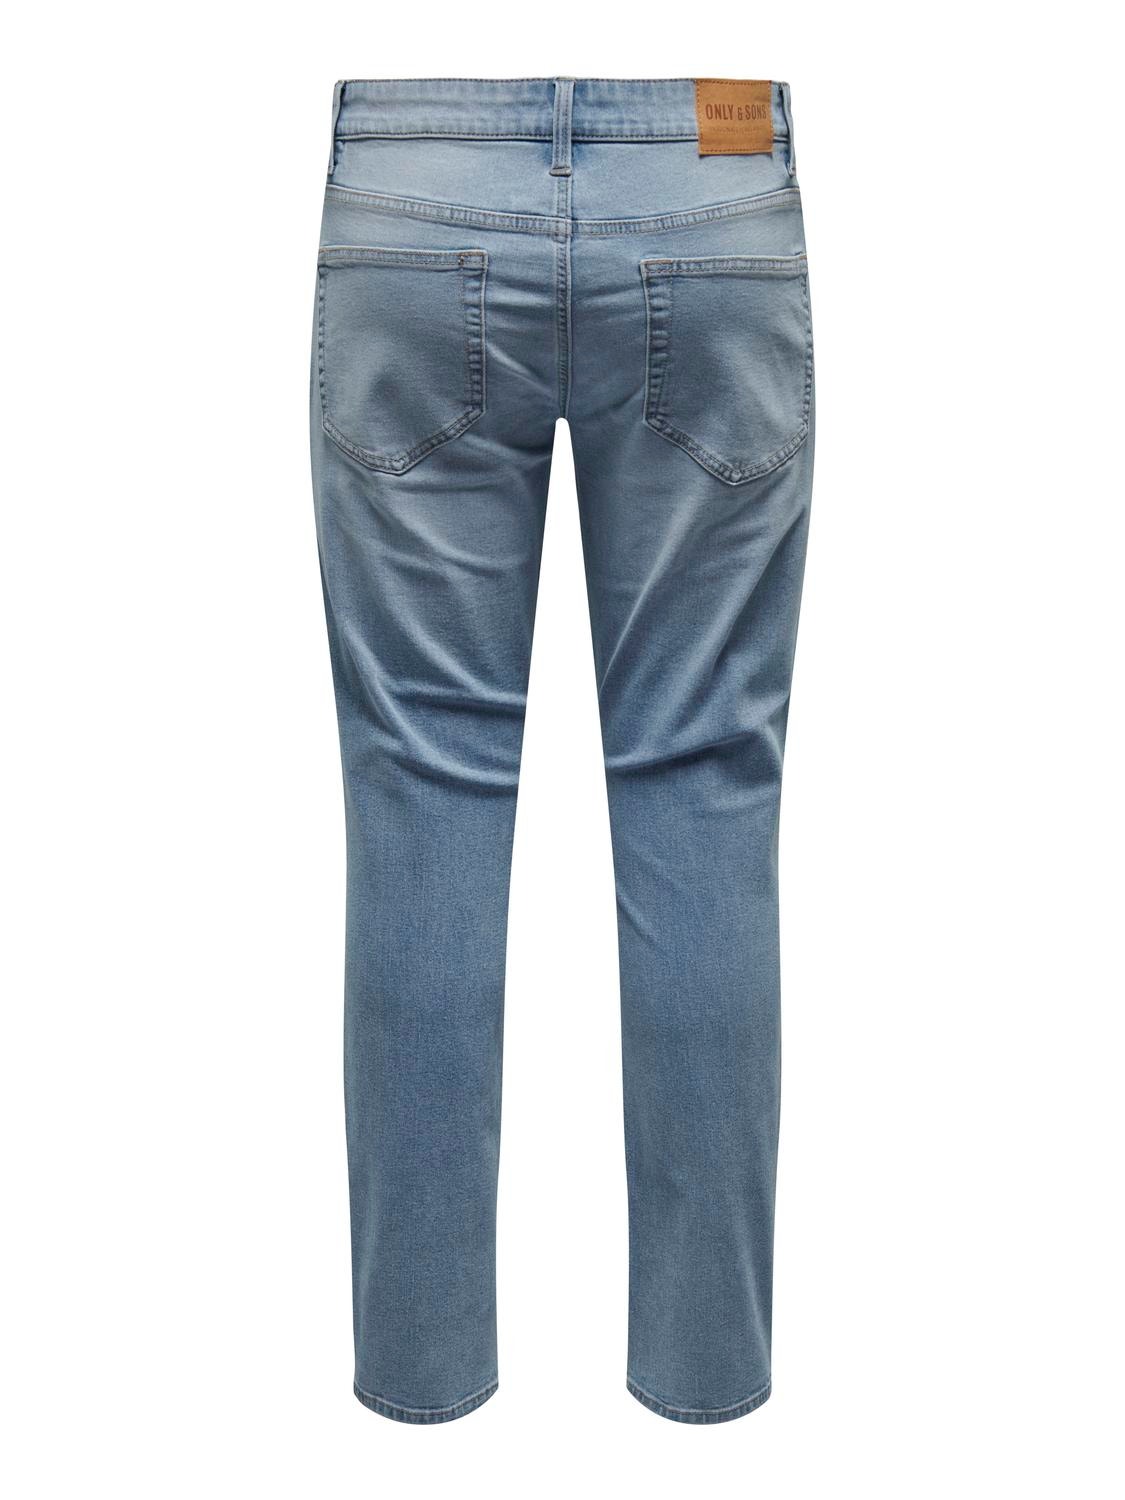 ONLY & SONS Slim fit Jeans -Light Blue Denim - 22027992